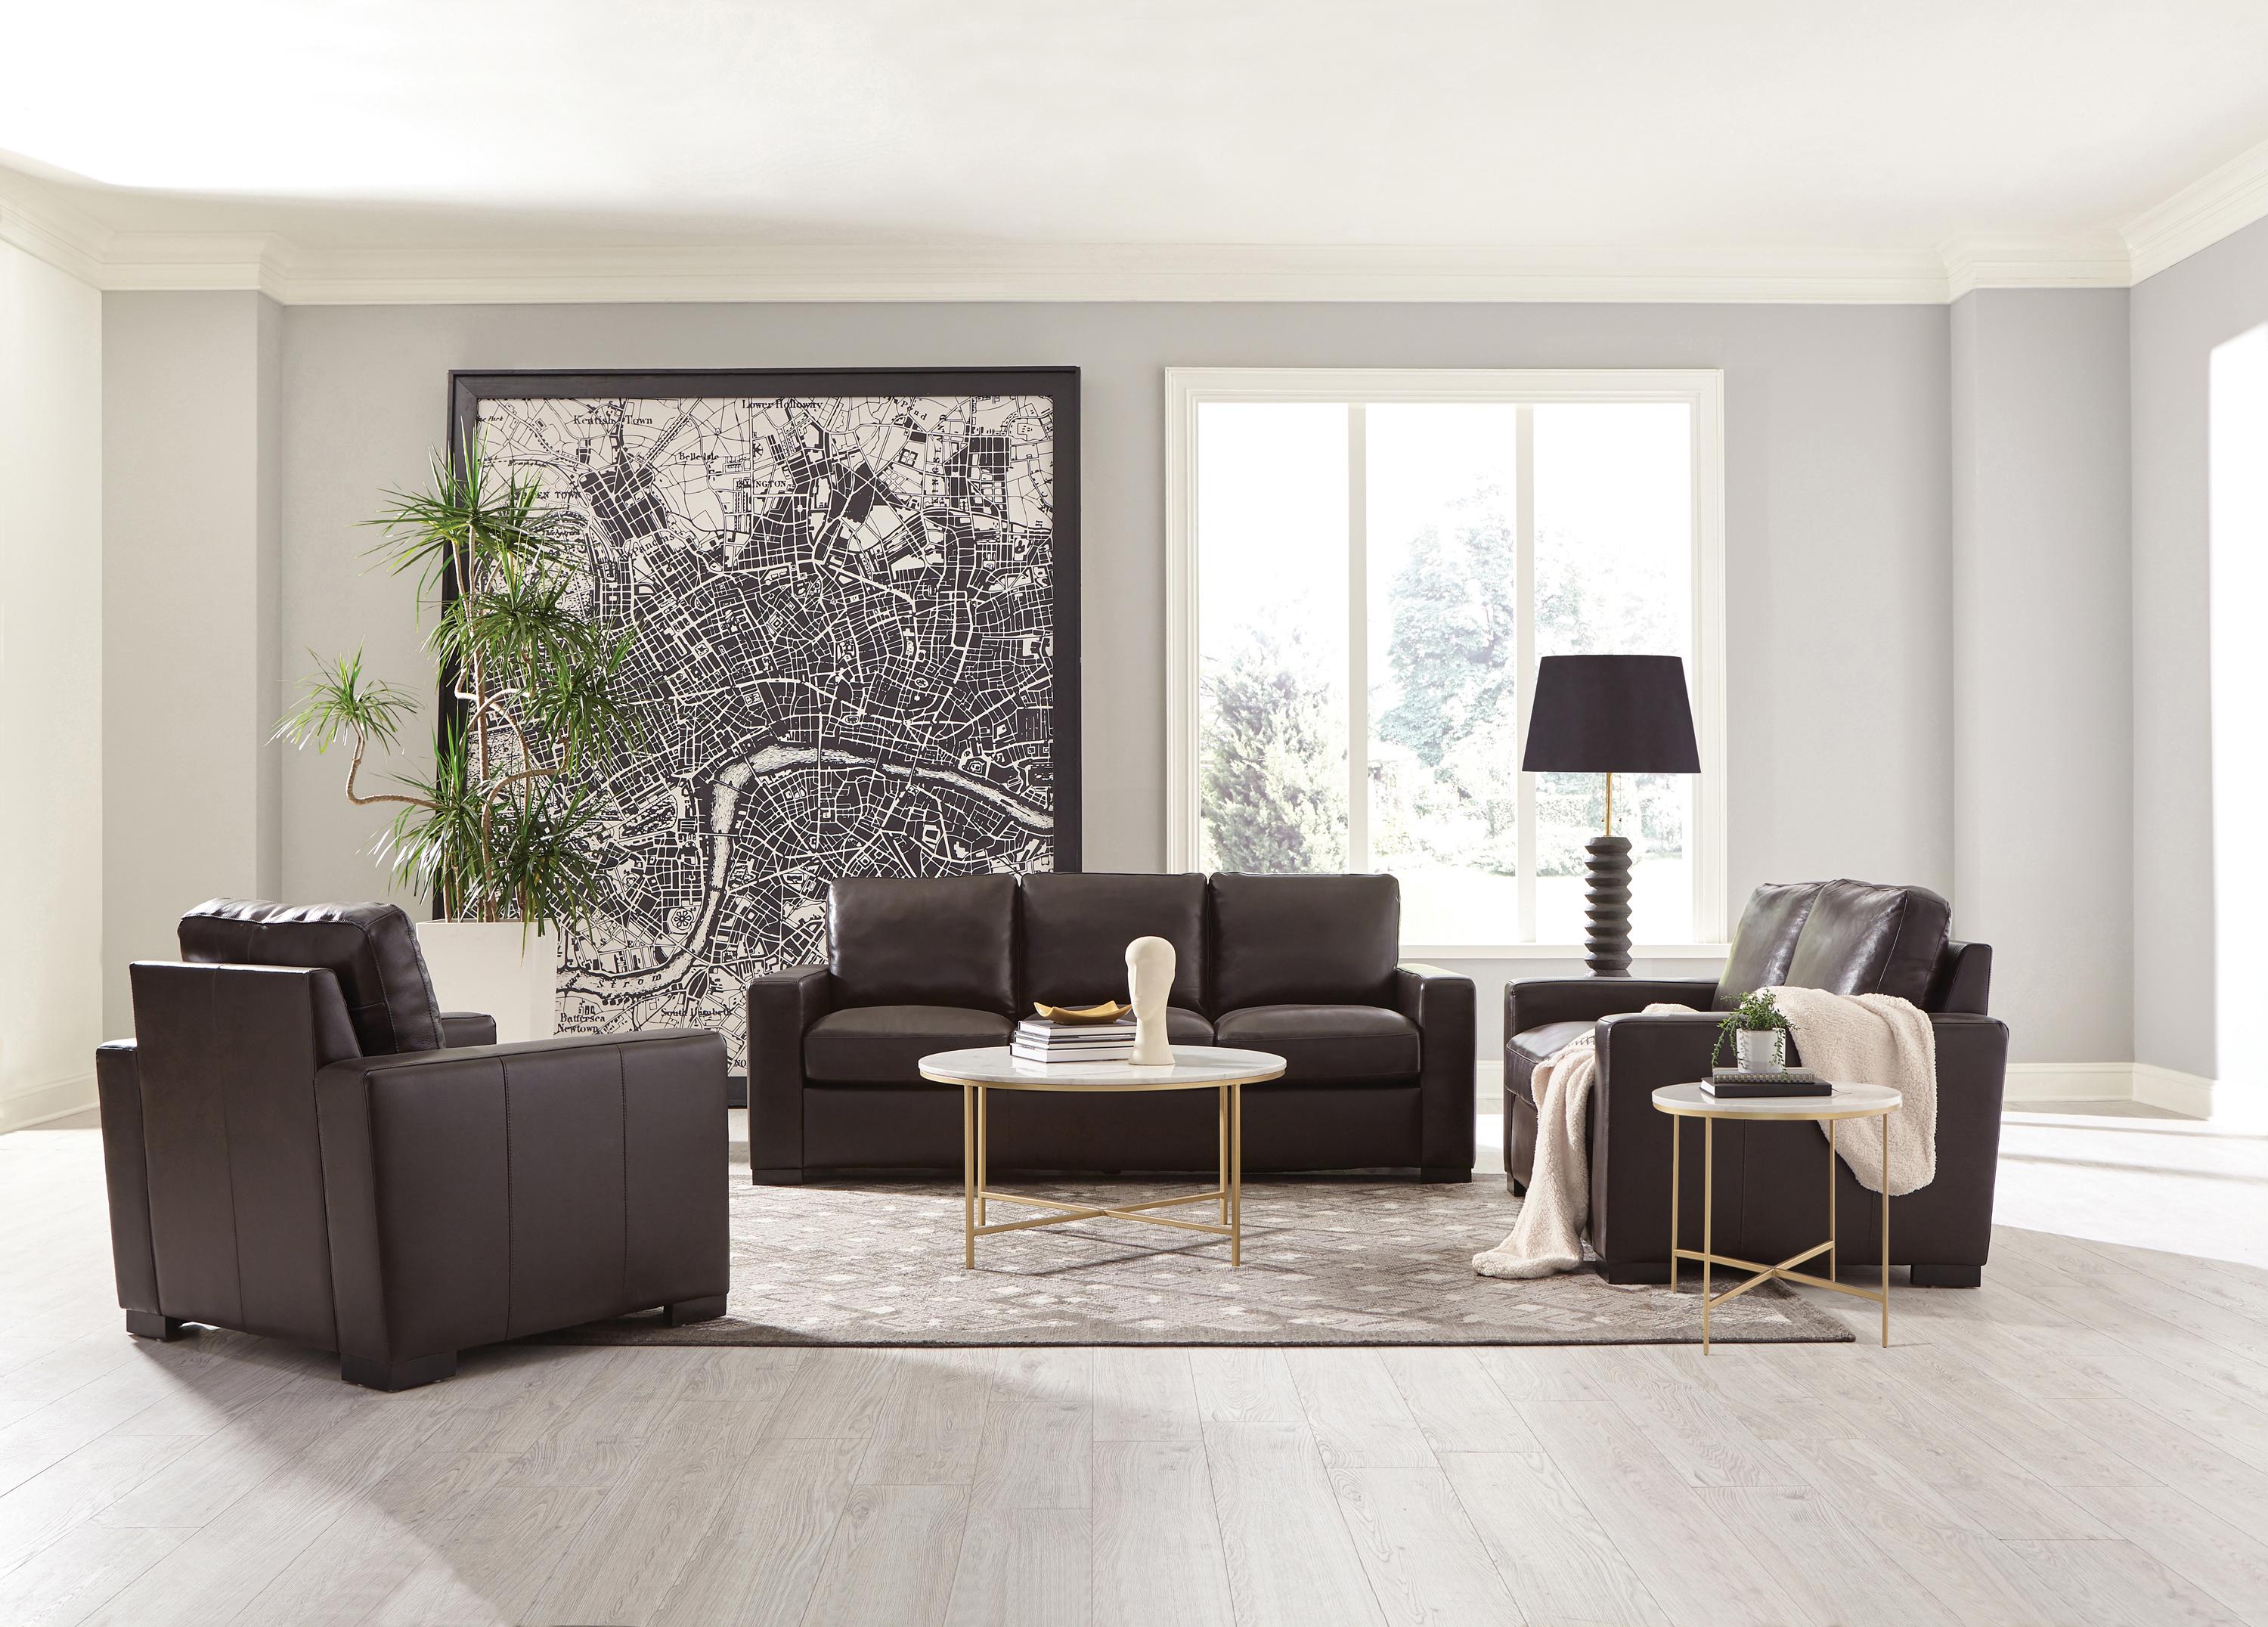 Modern Living Room Set 506801-S3 Boardmead 506801-S3 in Dark Brown Leather